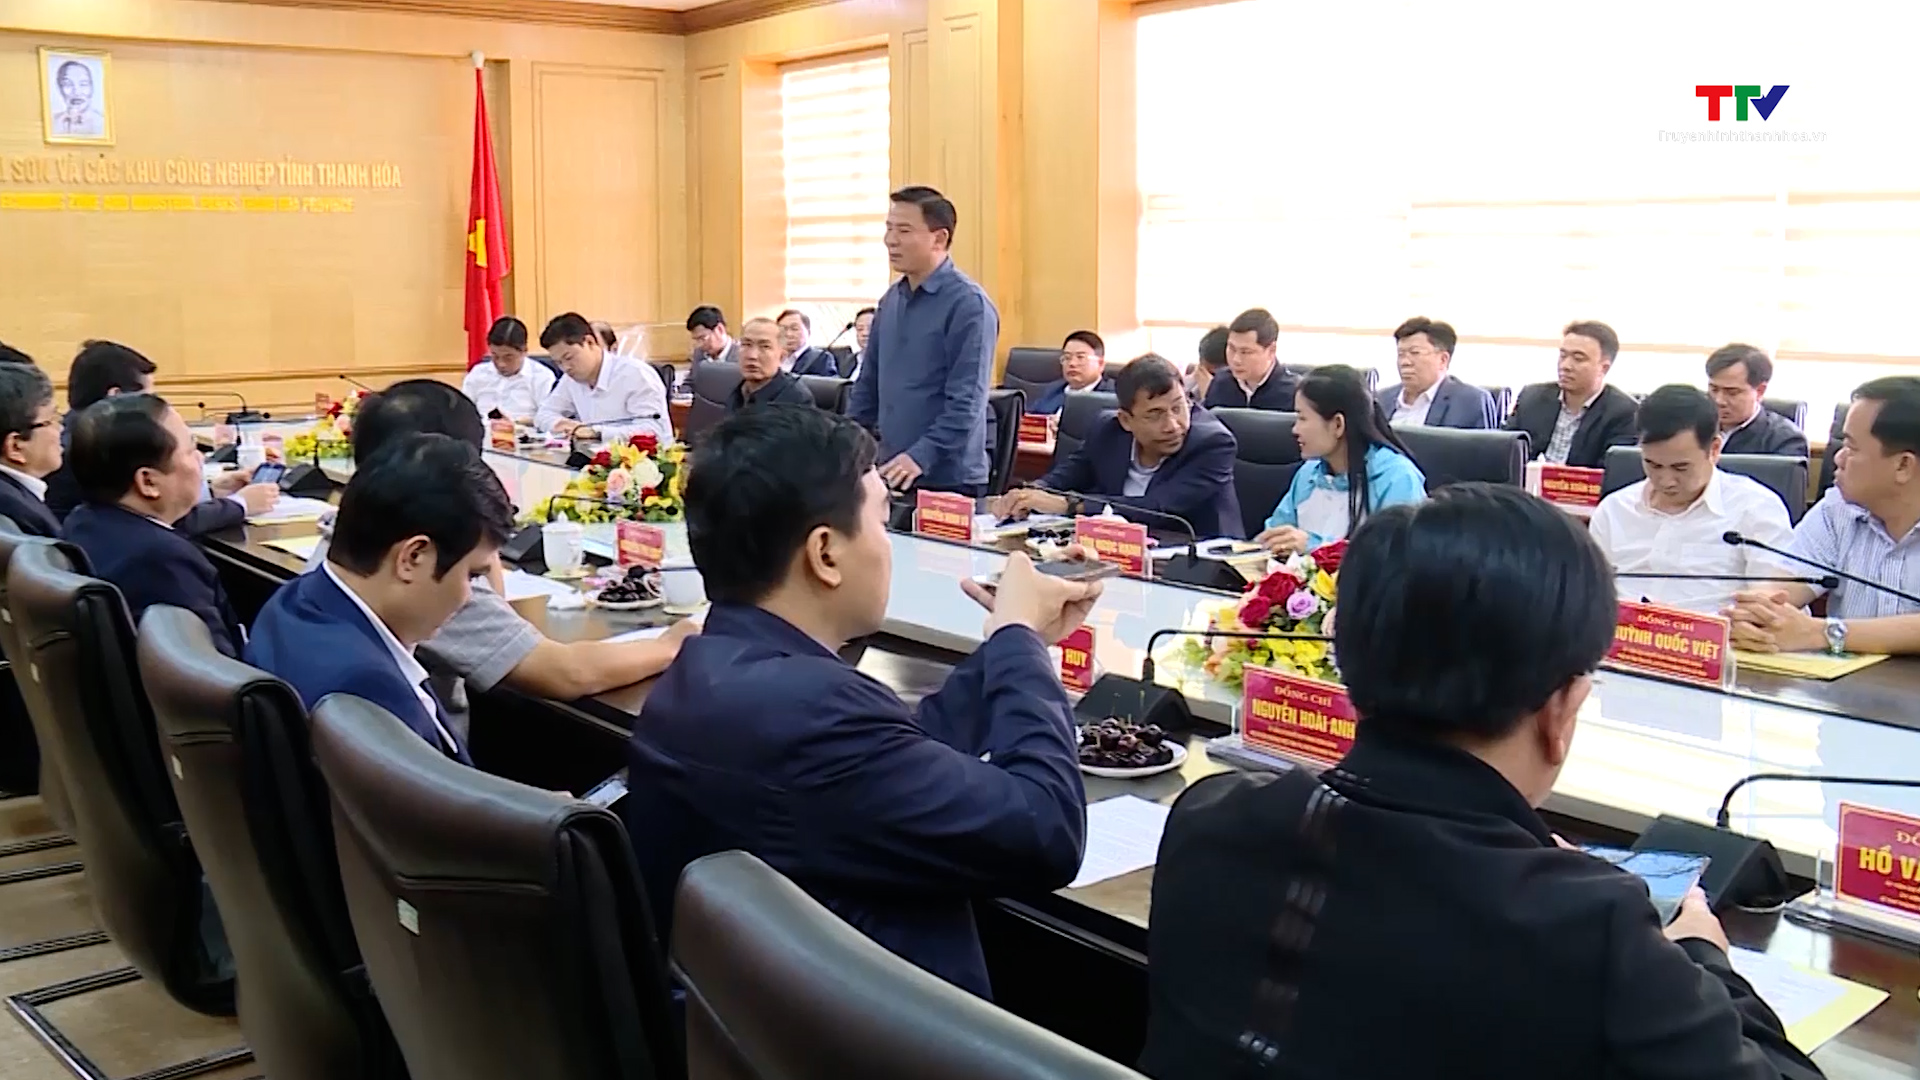 Đoàn công tác Học viện chính trị Quốc gia Hồ Chí Minh nghiên cứu, khảo sát thực tế tại Thanh Hóa - Ảnh 5.